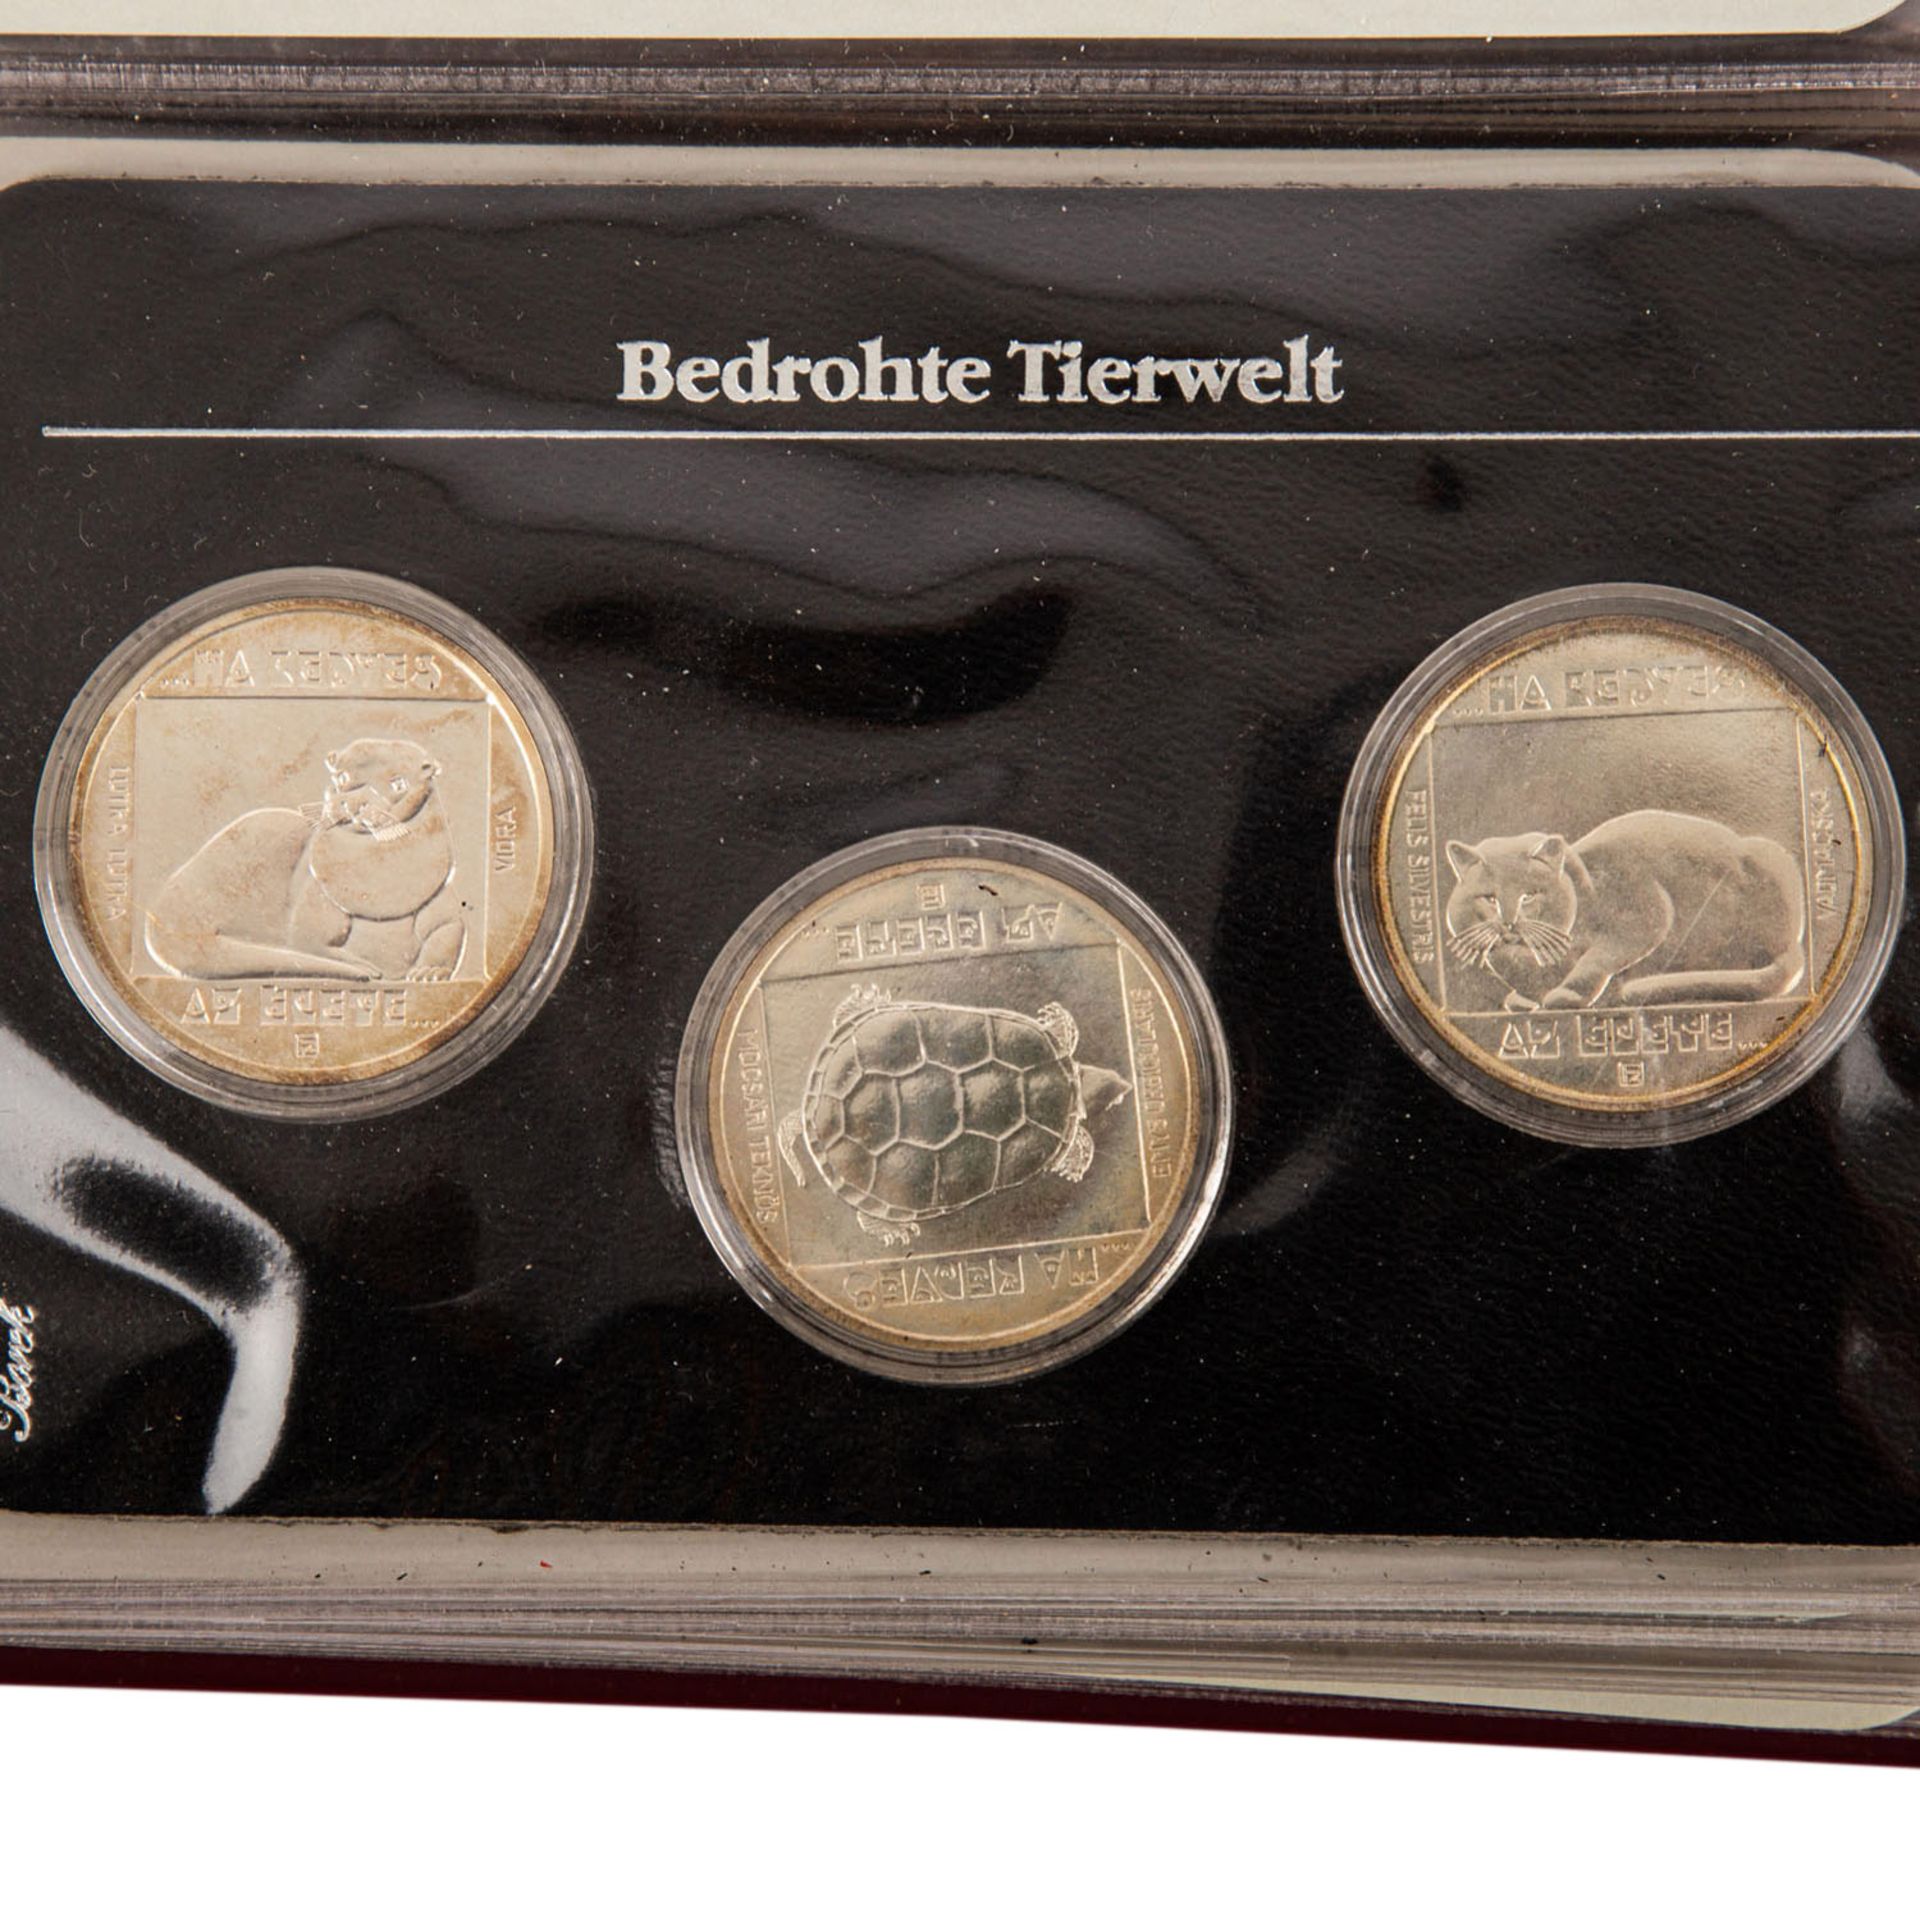 Bedrohte Tierwelt - Thematische Sammlung aus 1984/86,30 Münzen, teils in Silber, ausgiebig - Bild 4 aus 4